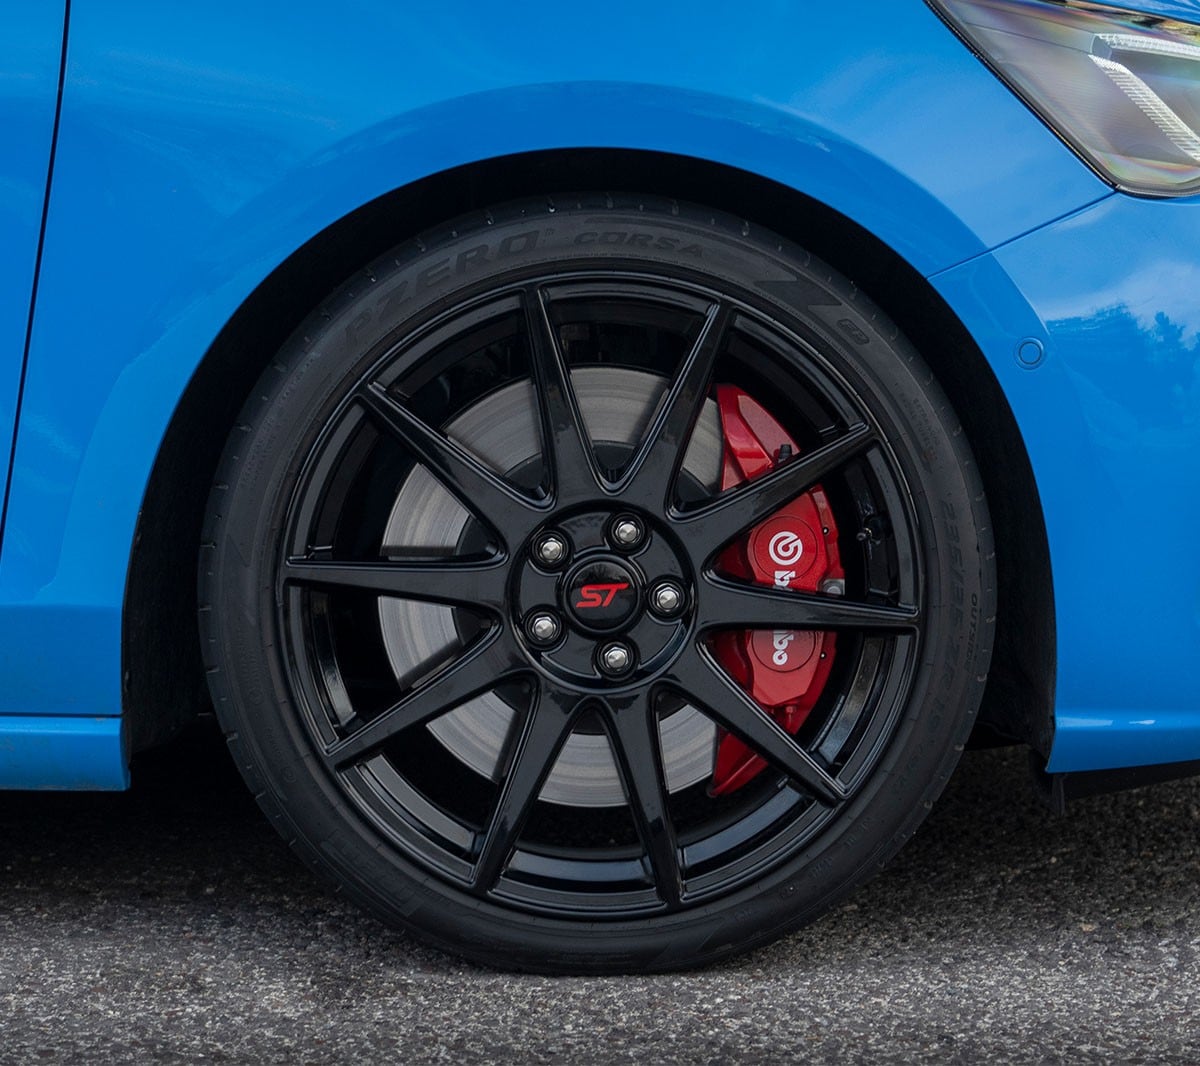 Ford Focus ST in Blau. Detailansicht der Vorderreifen.